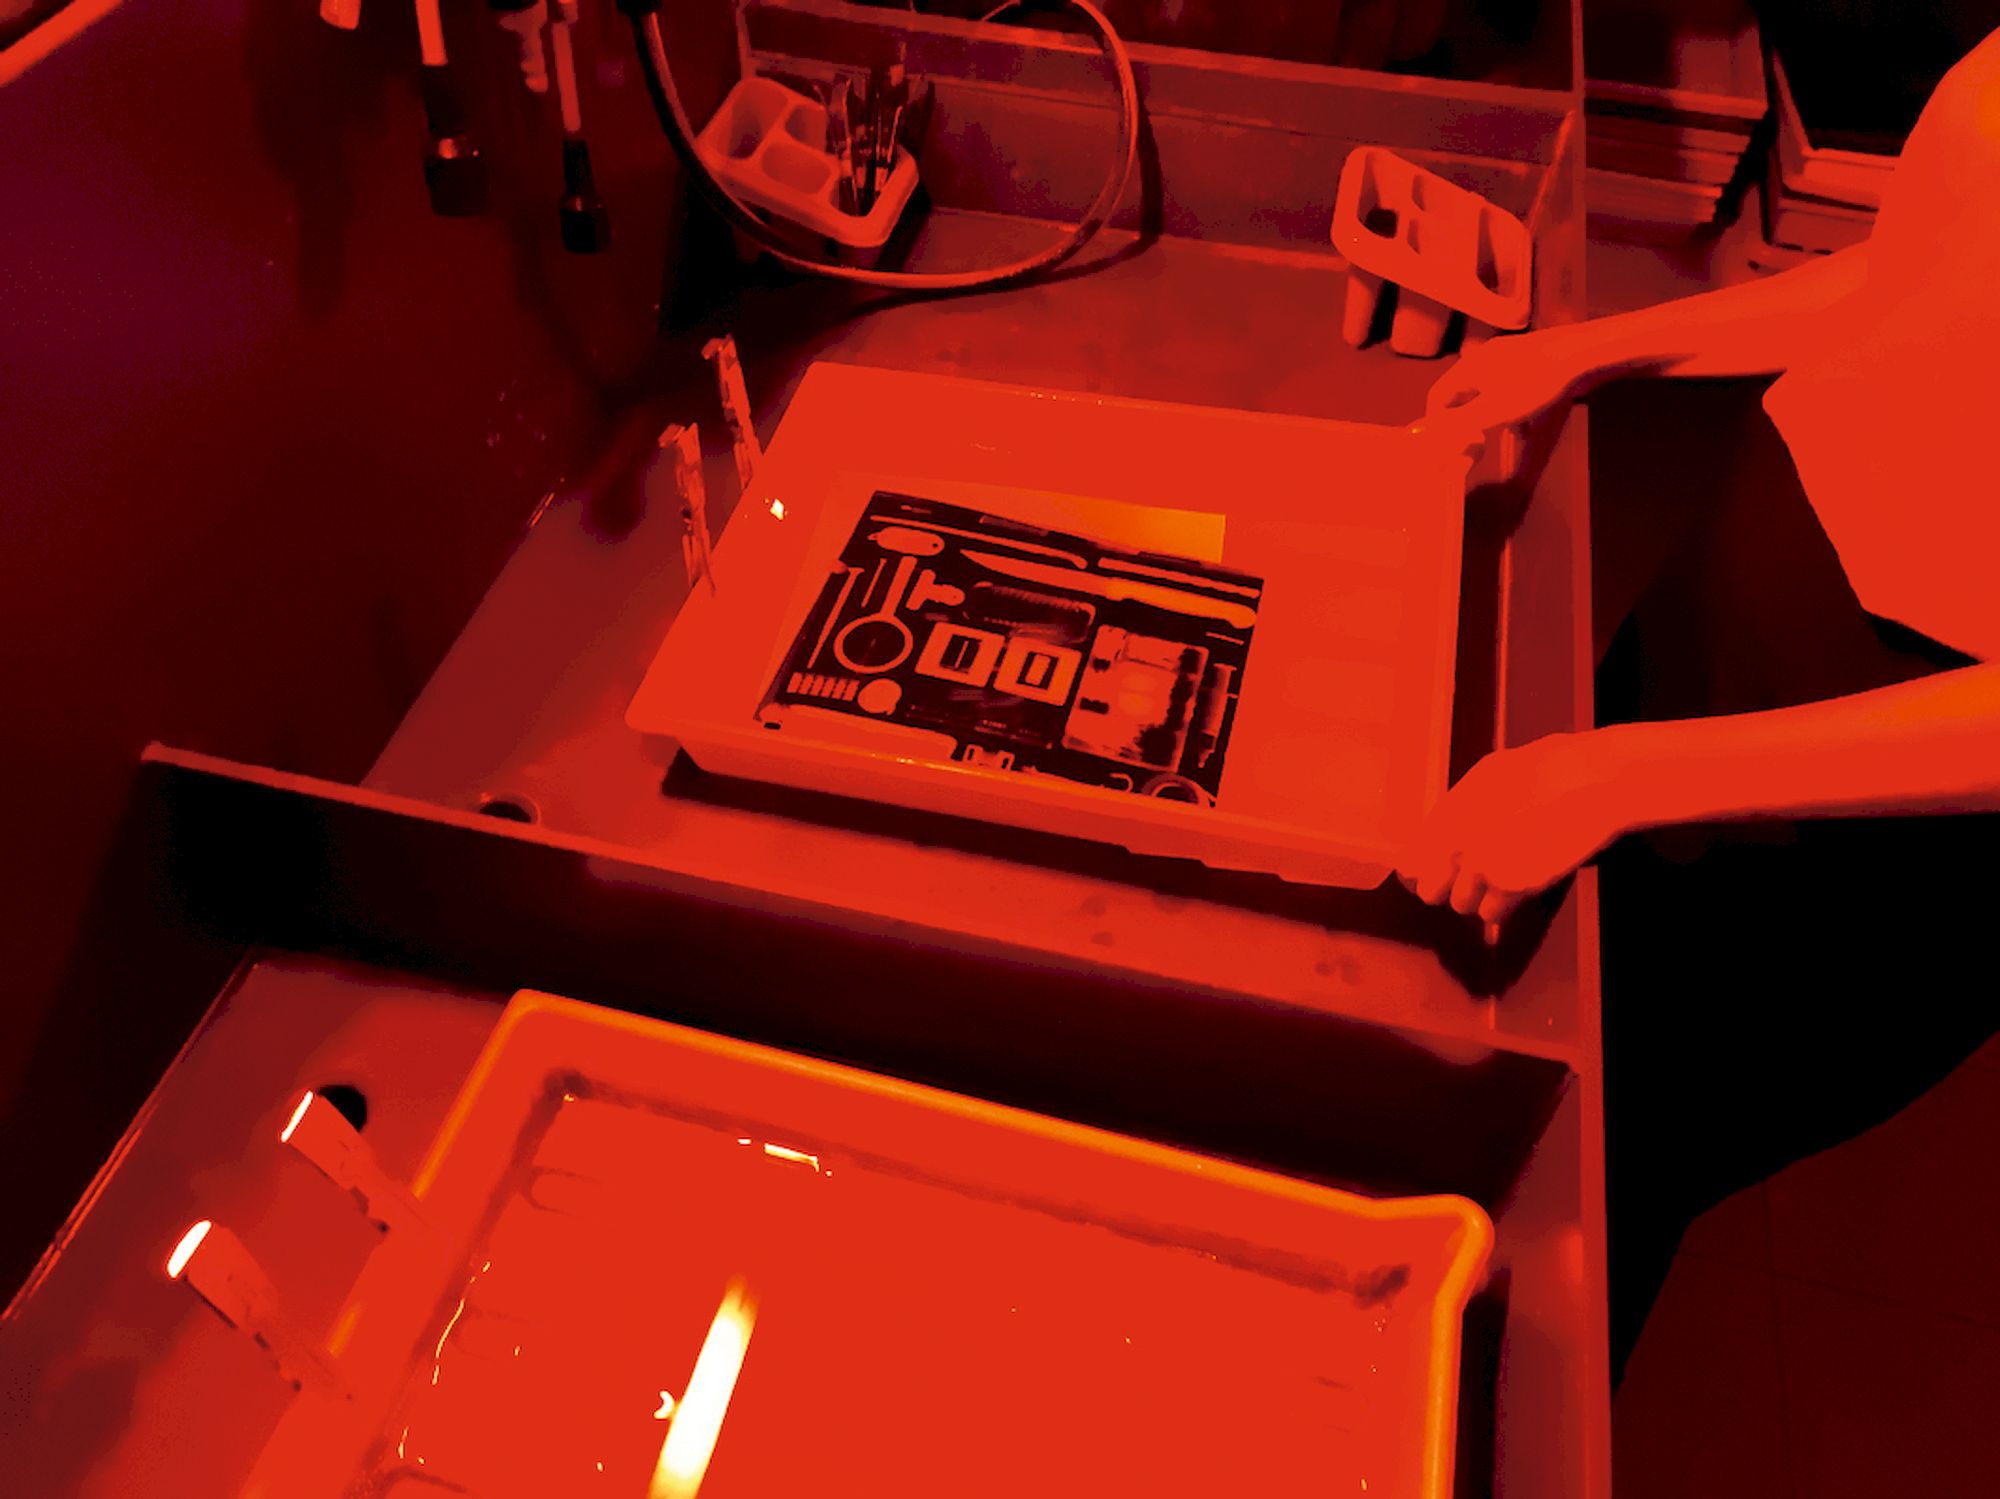 Eine Person arbeitet bei rotem licht in einer Dunkelkammer. In einer Schale mit Flüssigkeit liegt ein Schwarzweiß-Bild.